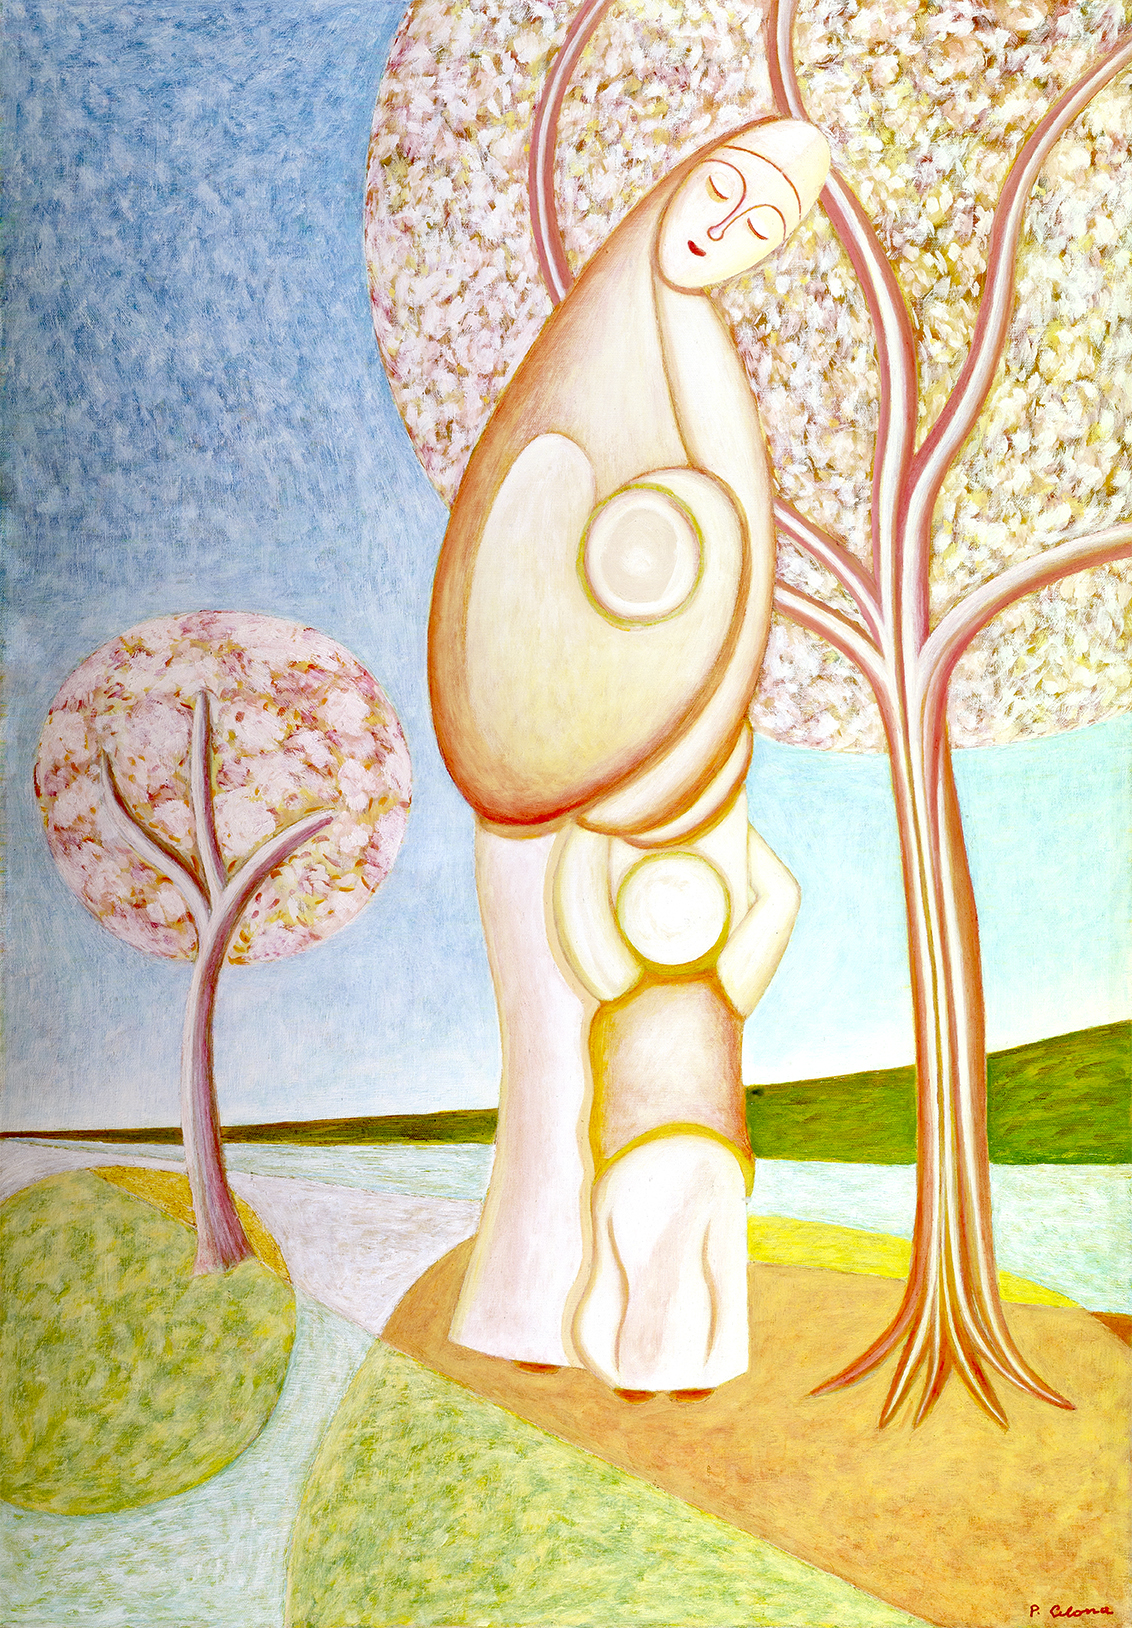 Maternità, ca. 1990
Olio su tela
30 x 20 cm
C101